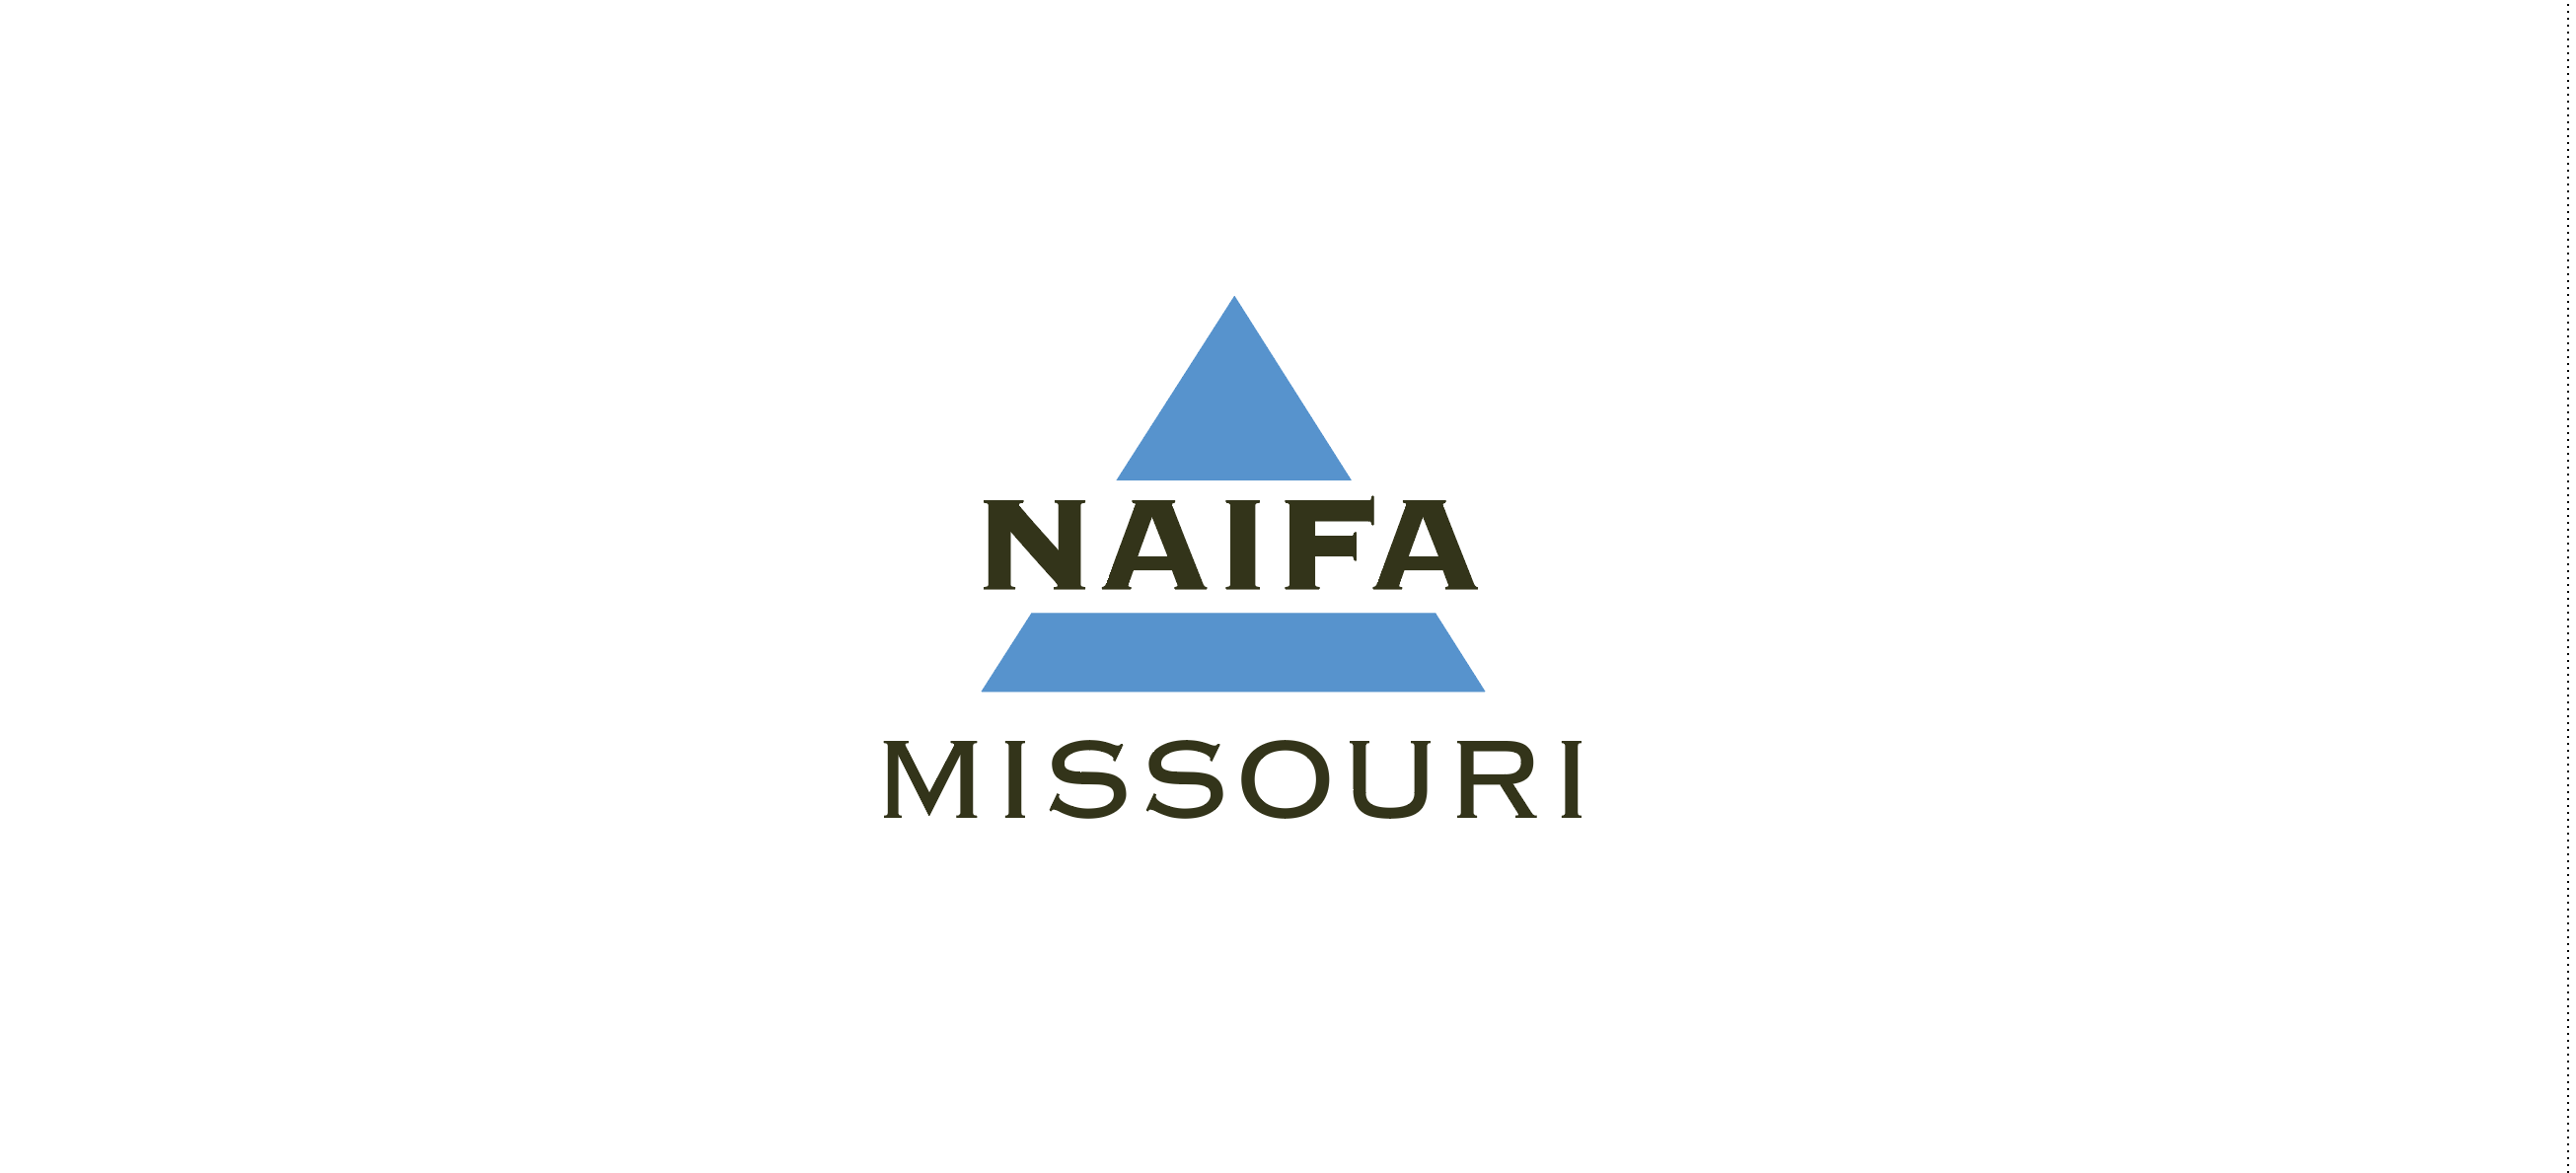 NAIFA Missouri Golf Tournament